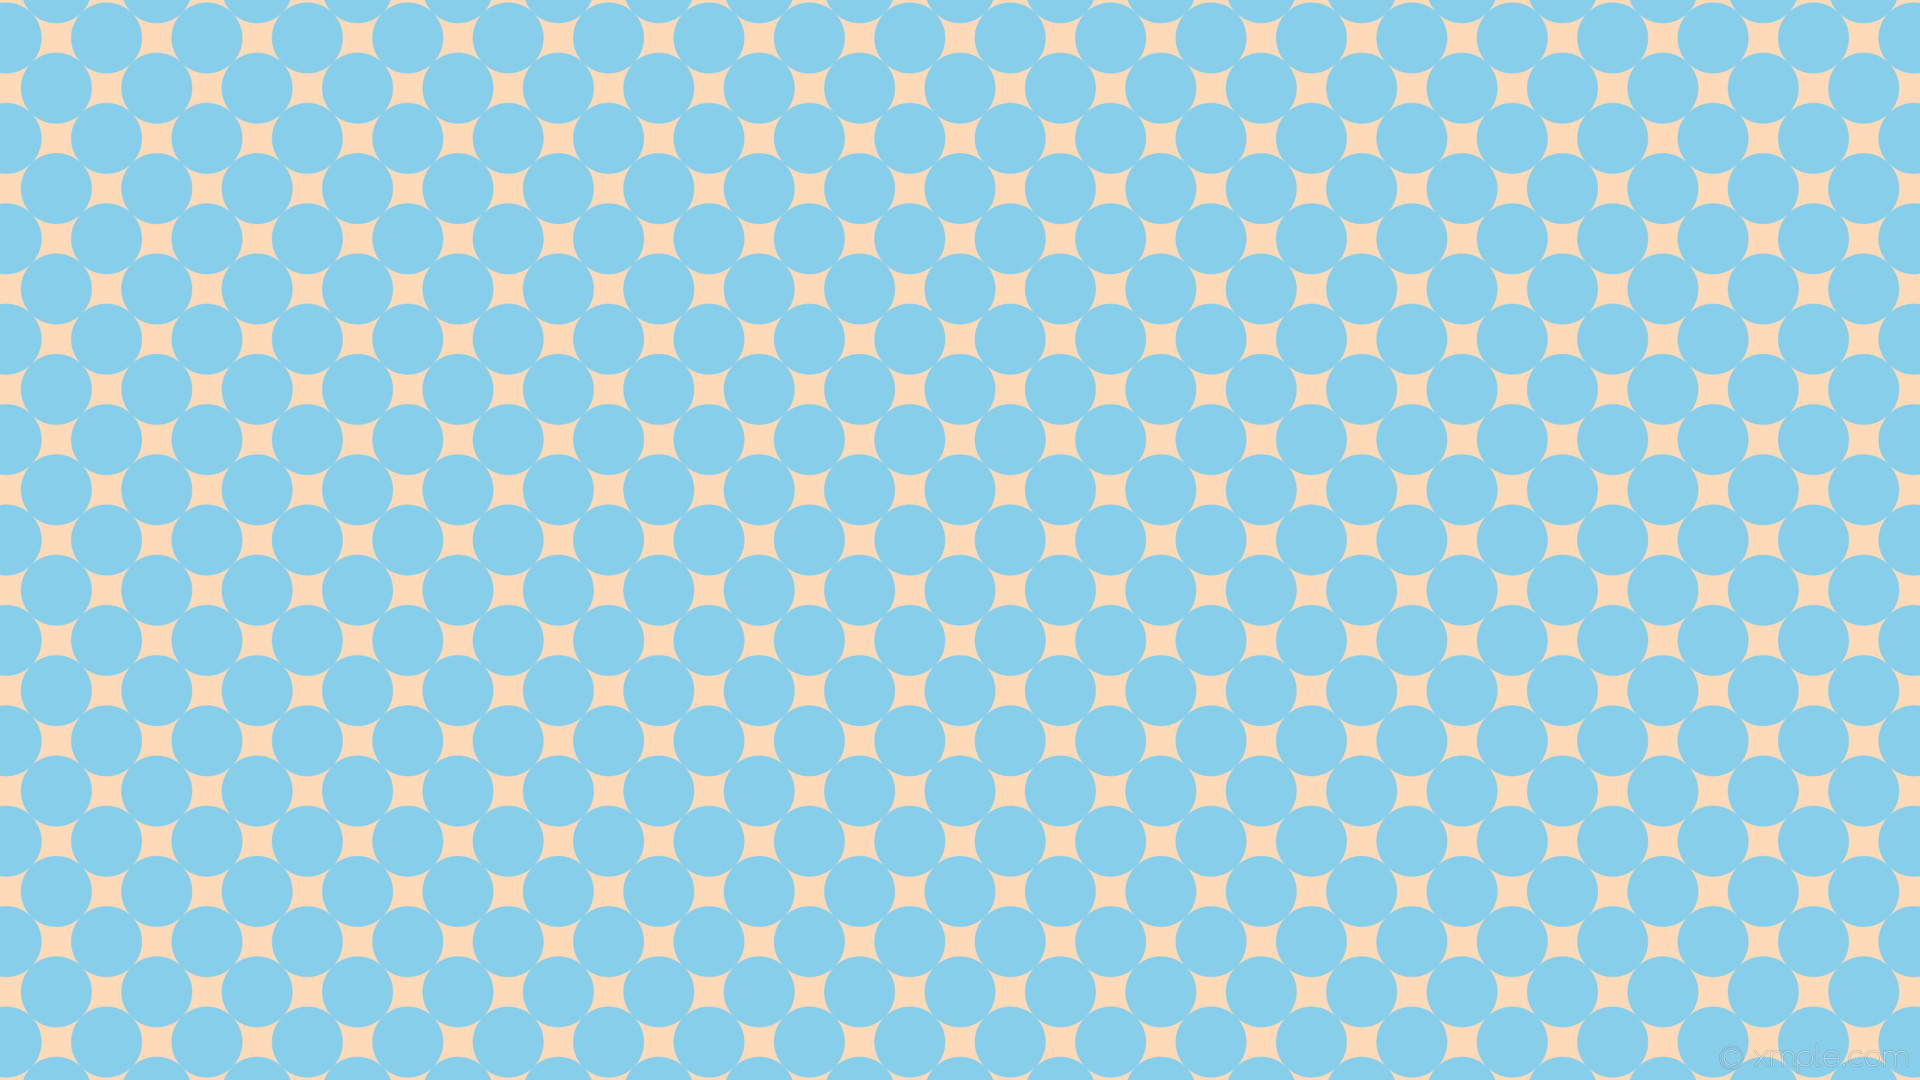 1920x1080 wallpaper blue spots polka dots yellow peach puff sky blue #ffdab9 #87ceeb  315Â°